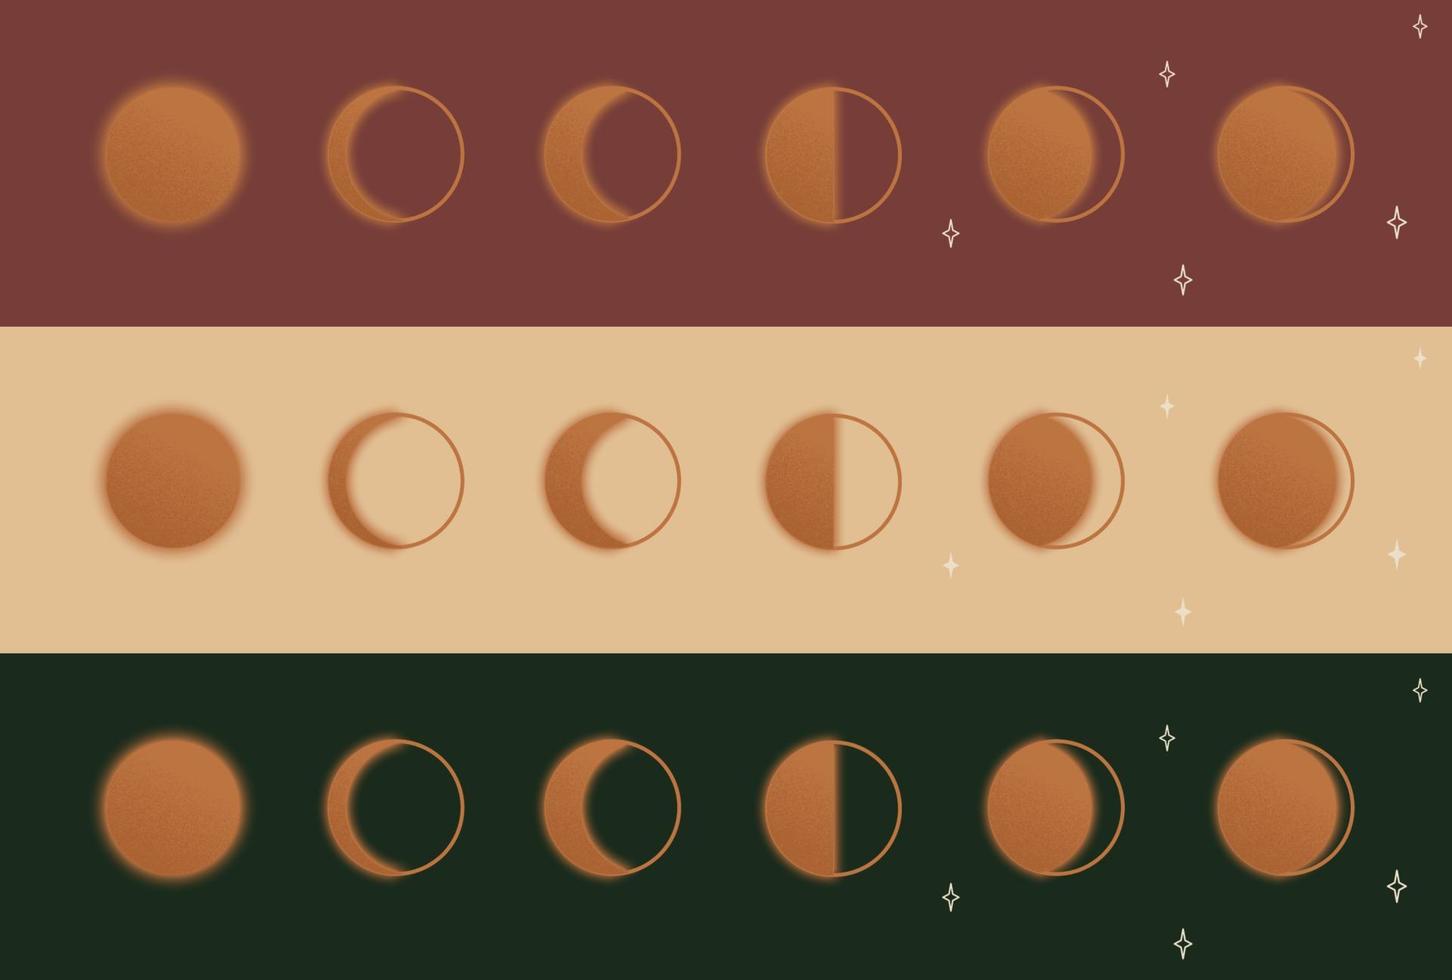 icona di astronomia fasi lunari con stelle. luna strutturata con bagliore. illustrazione vettoriale su sfondo bordeaux, verde e colore del corpo